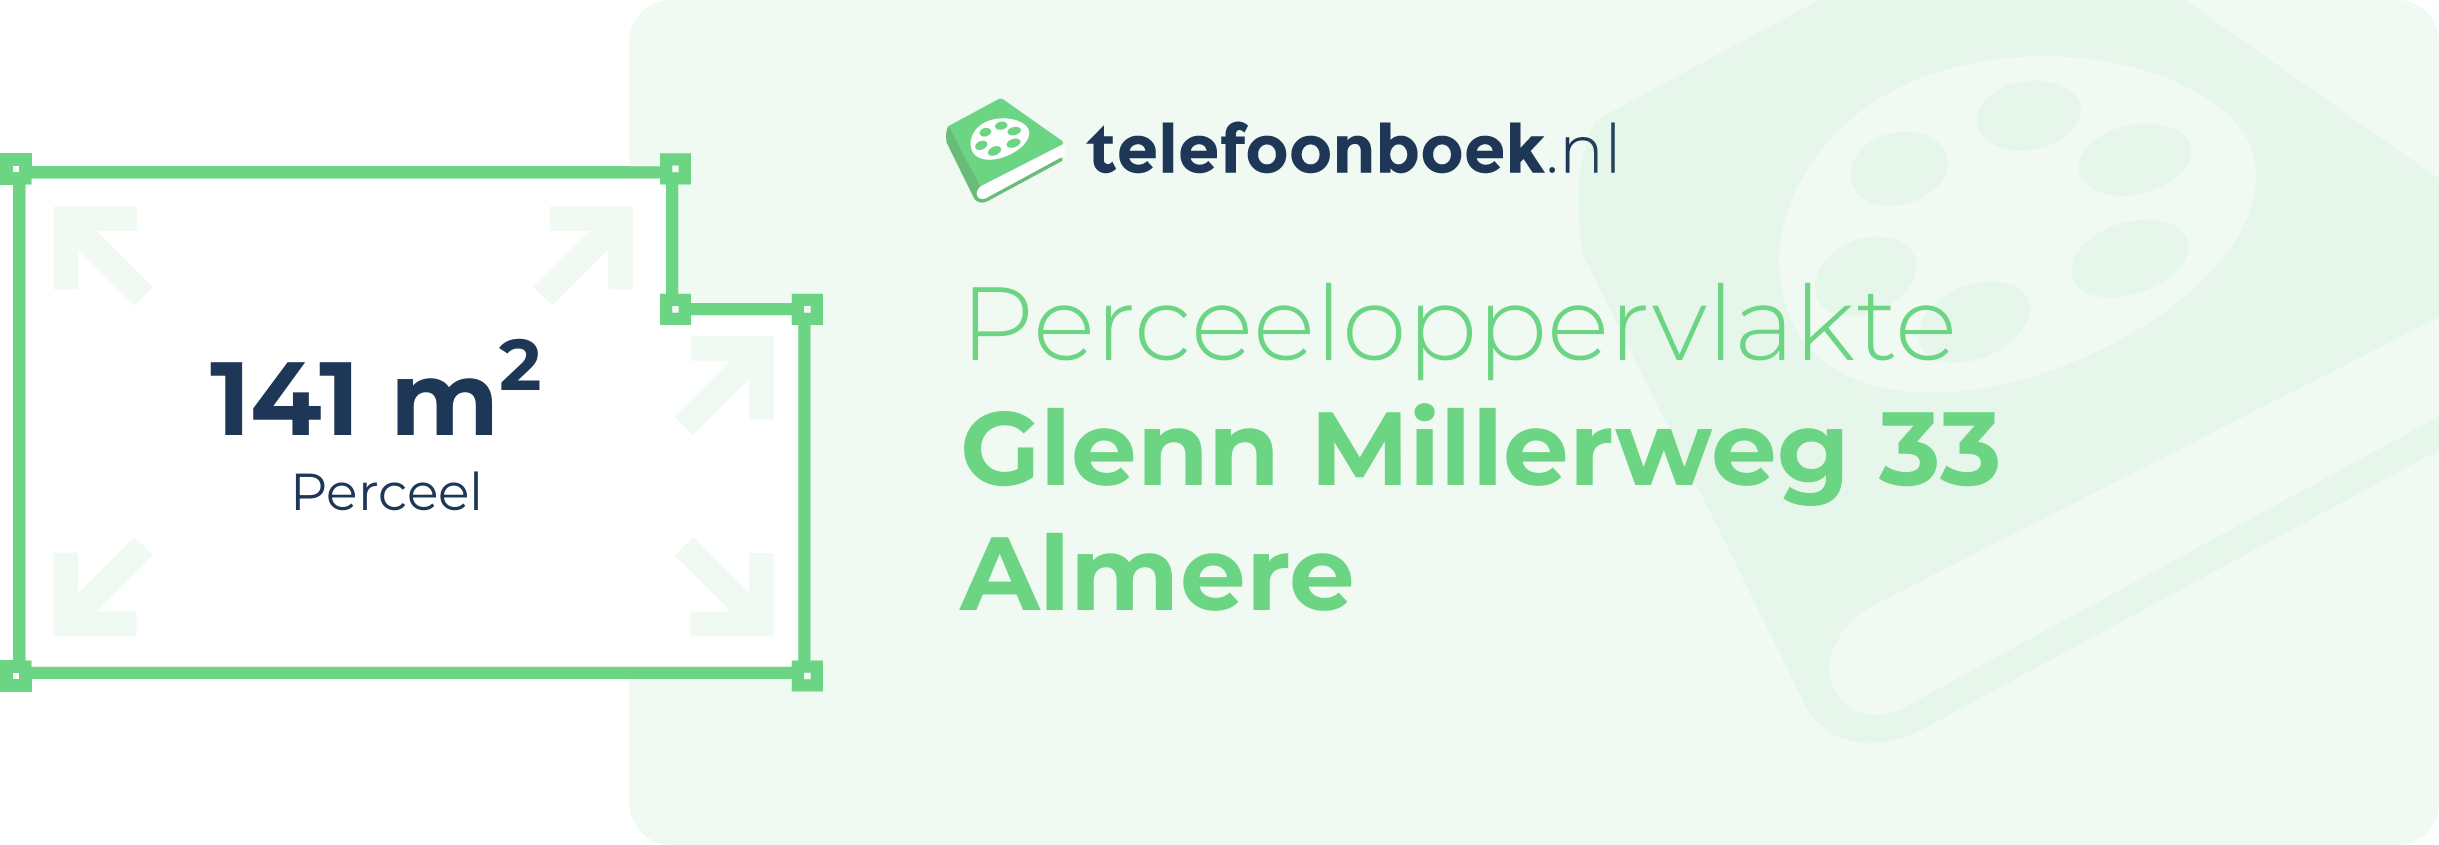 Perceeloppervlakte Glenn Millerweg 33 Almere